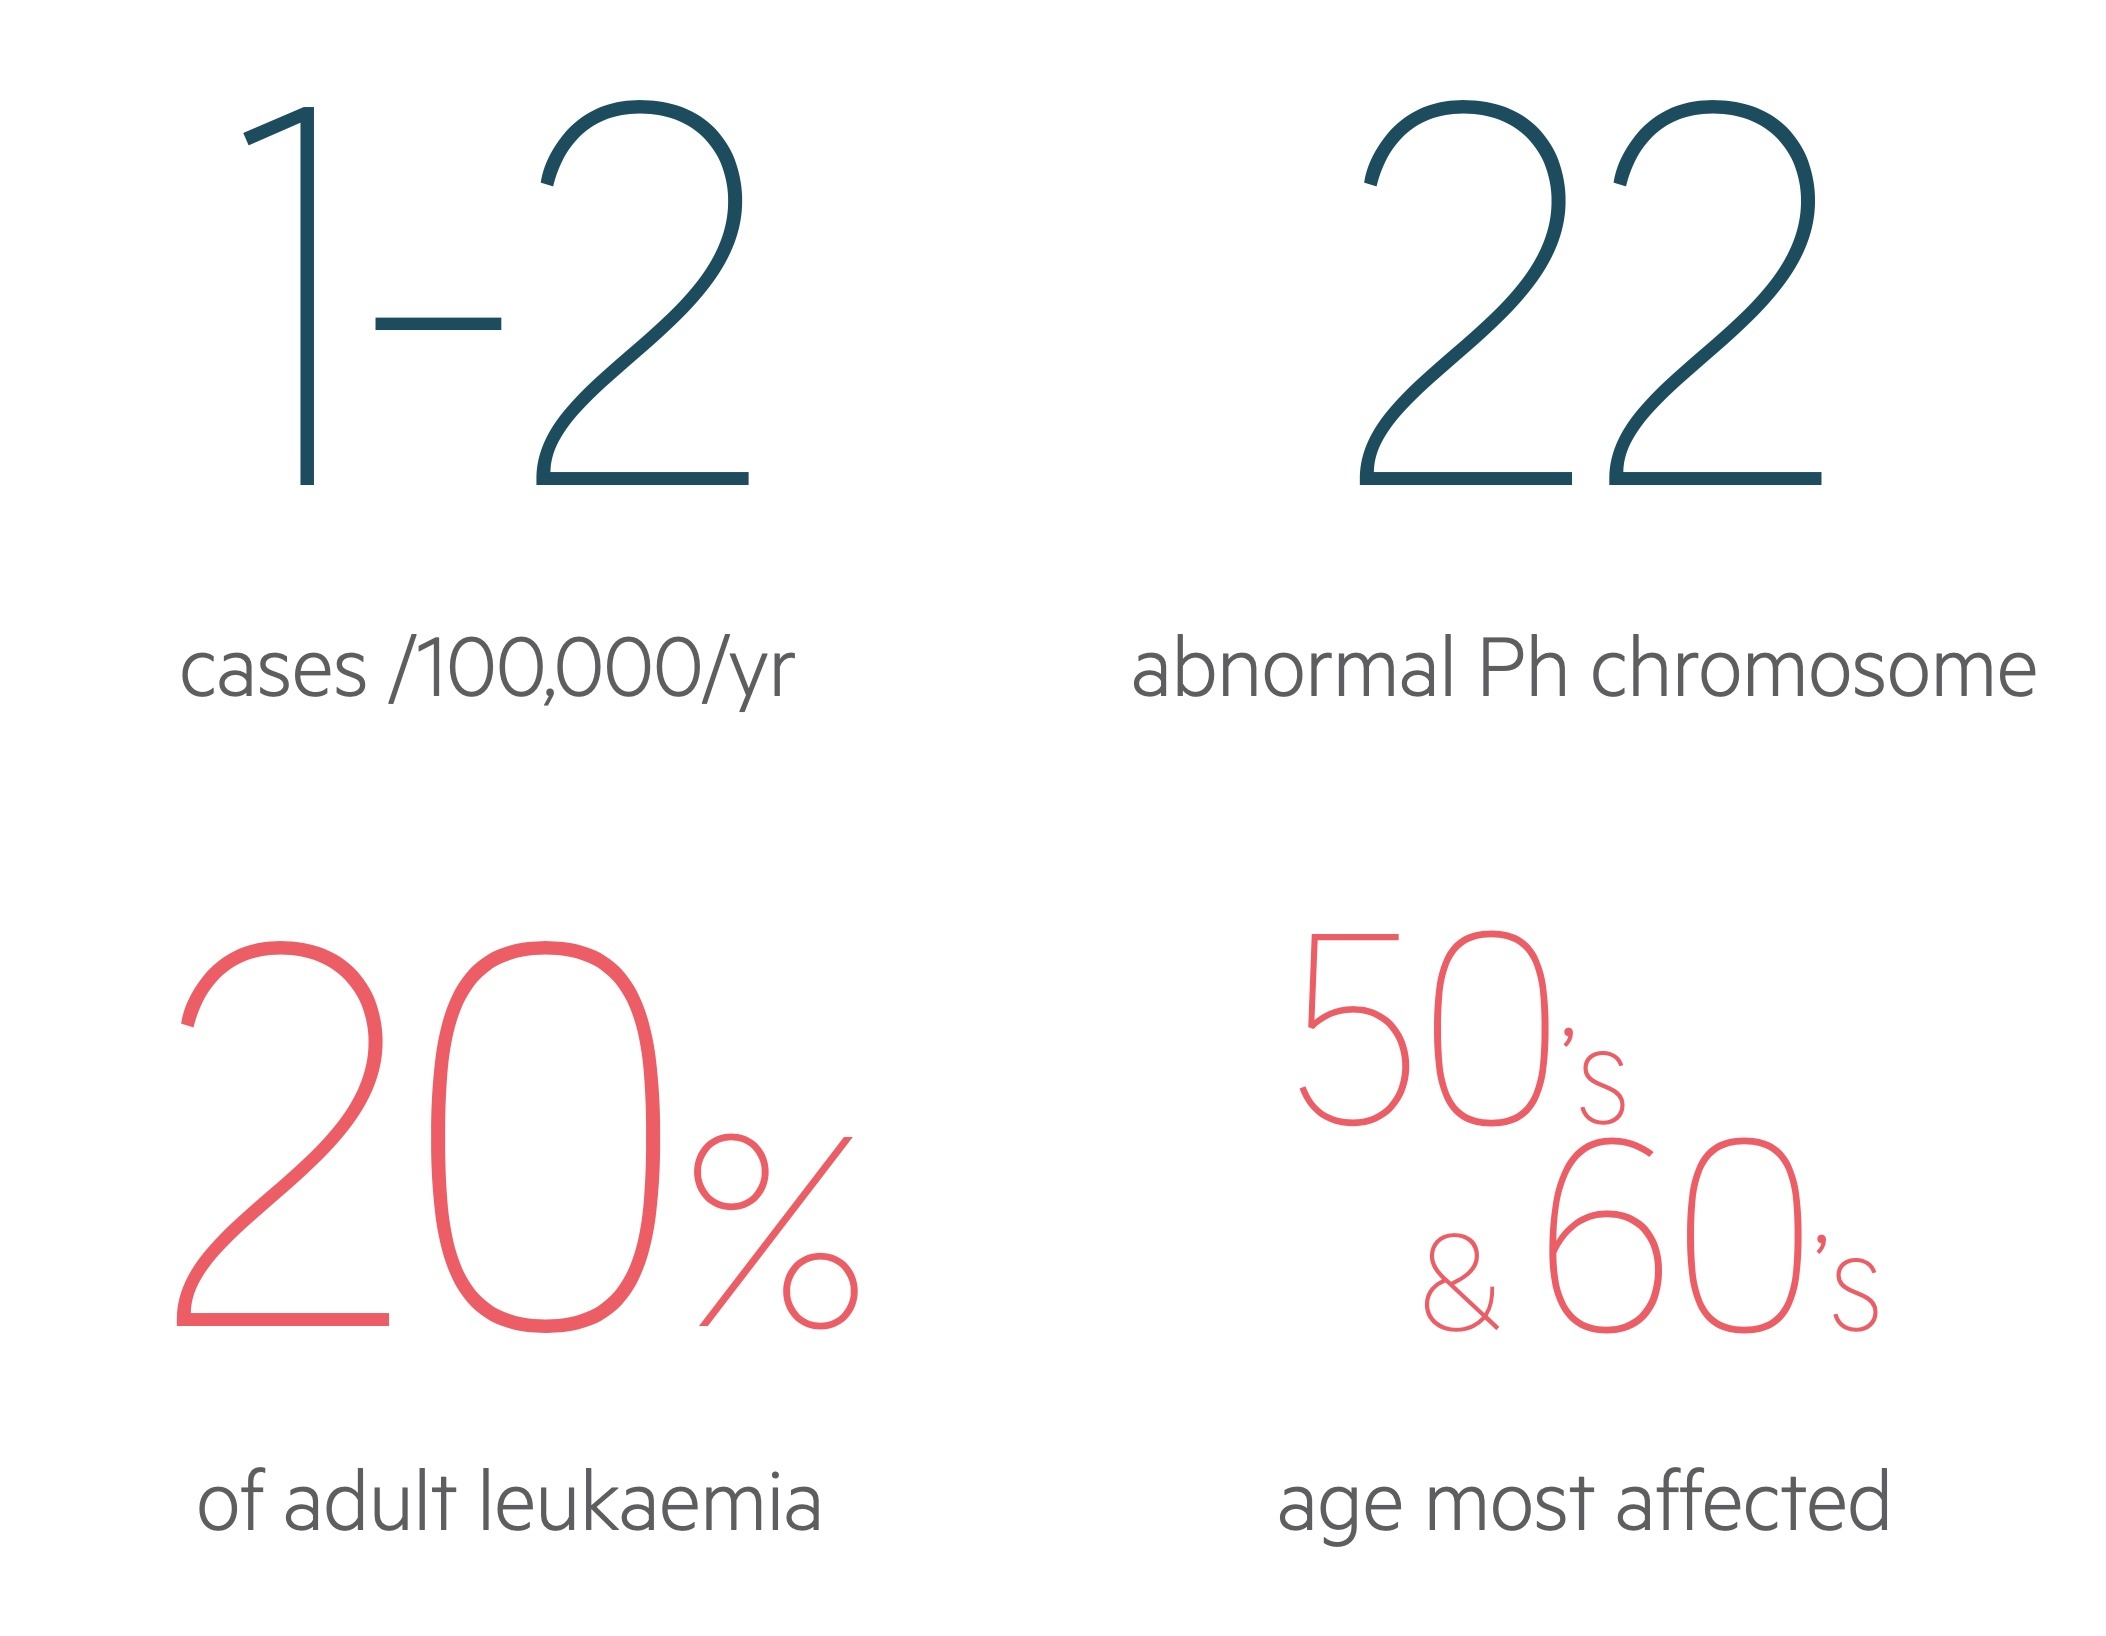 Chronic myeloid leukaemia (CML) facts and figures